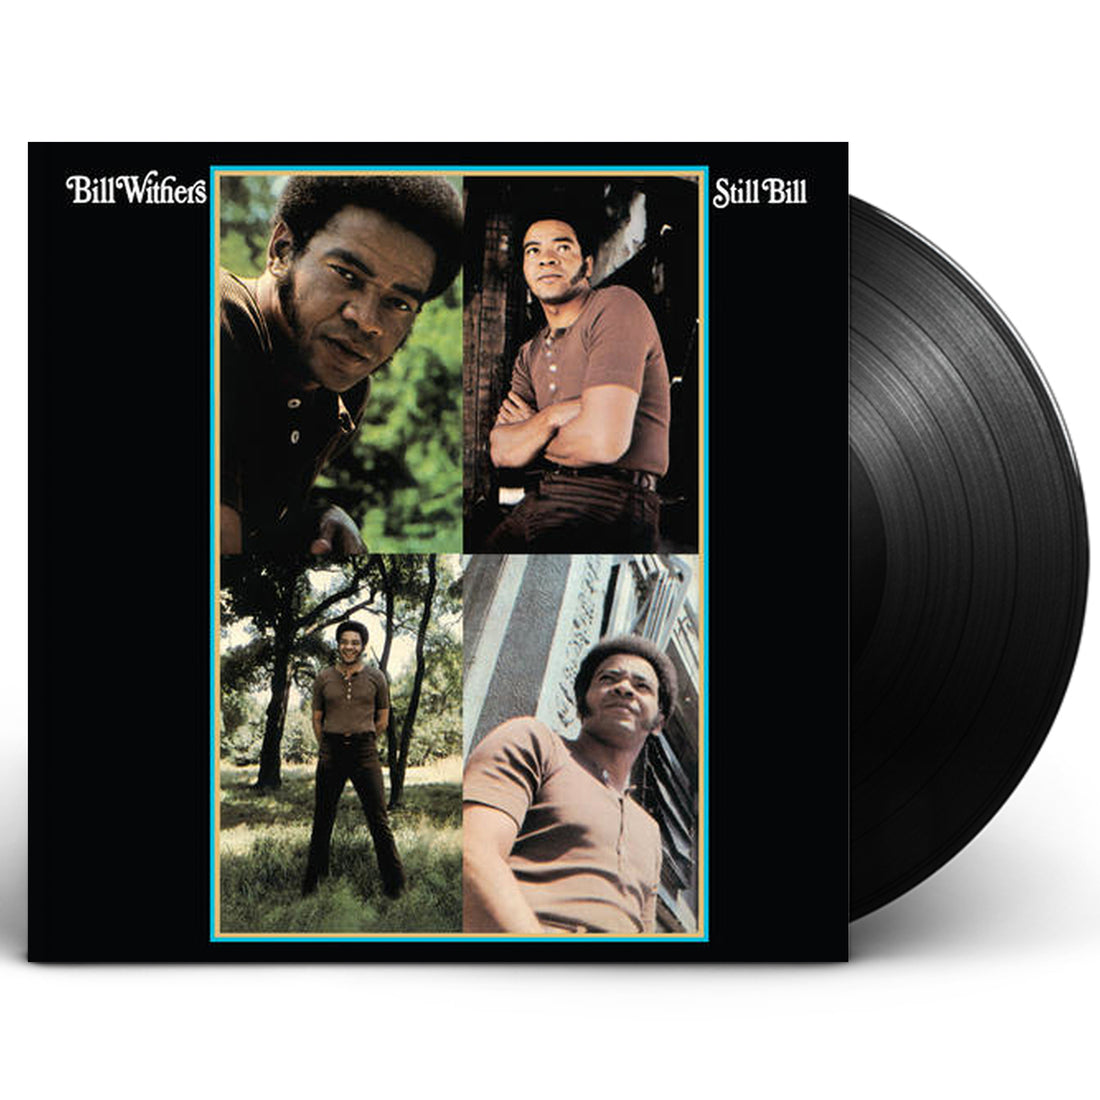 Bill Withers "Still Bill" LP 180 Gram Vinyl